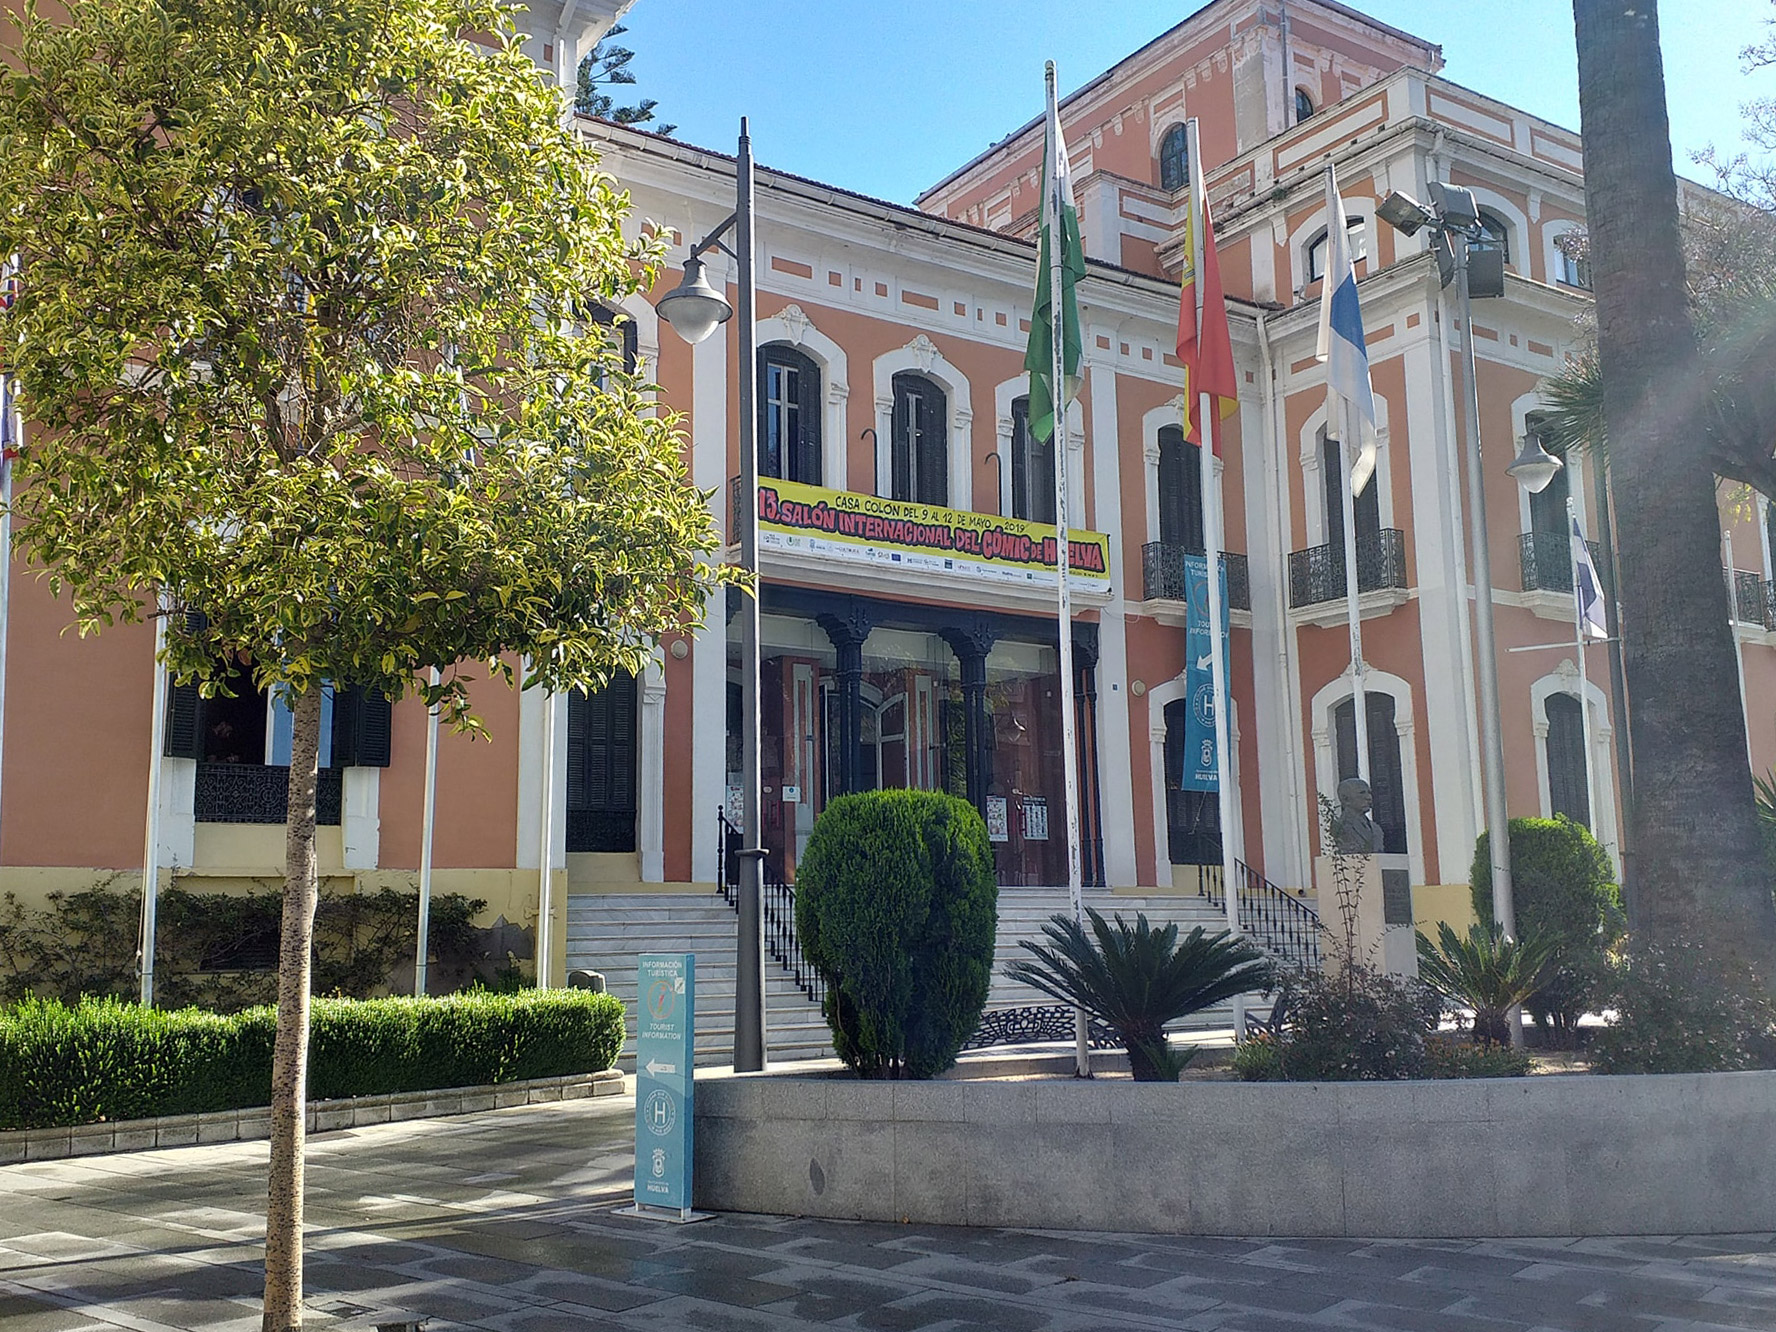 Casa Colón Salón Internacional del Cómic de Huelva